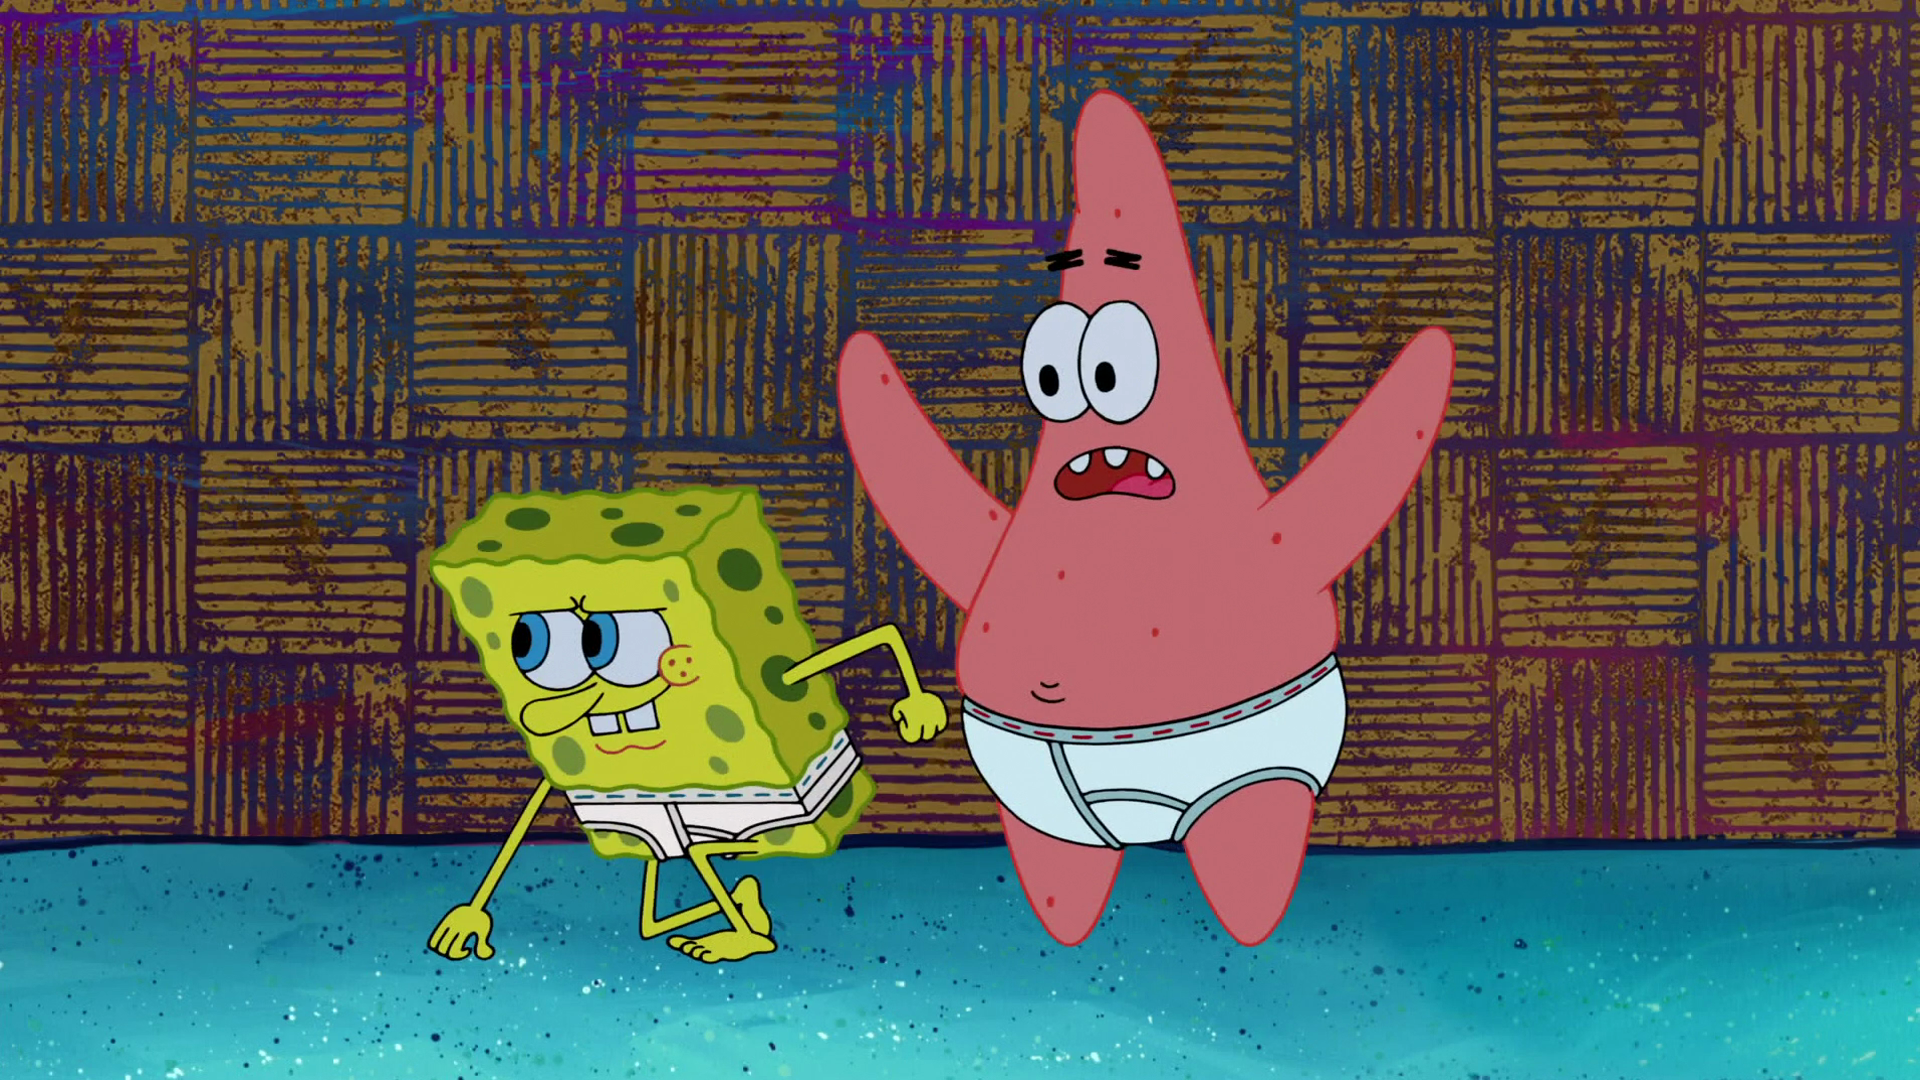 Spongebob patrick. Губка Боб и Патрик. Спансчоб и Патрик. Губка Боб квадратные штаны Патрик. Спанч Боб и Патрик в хорошем к.